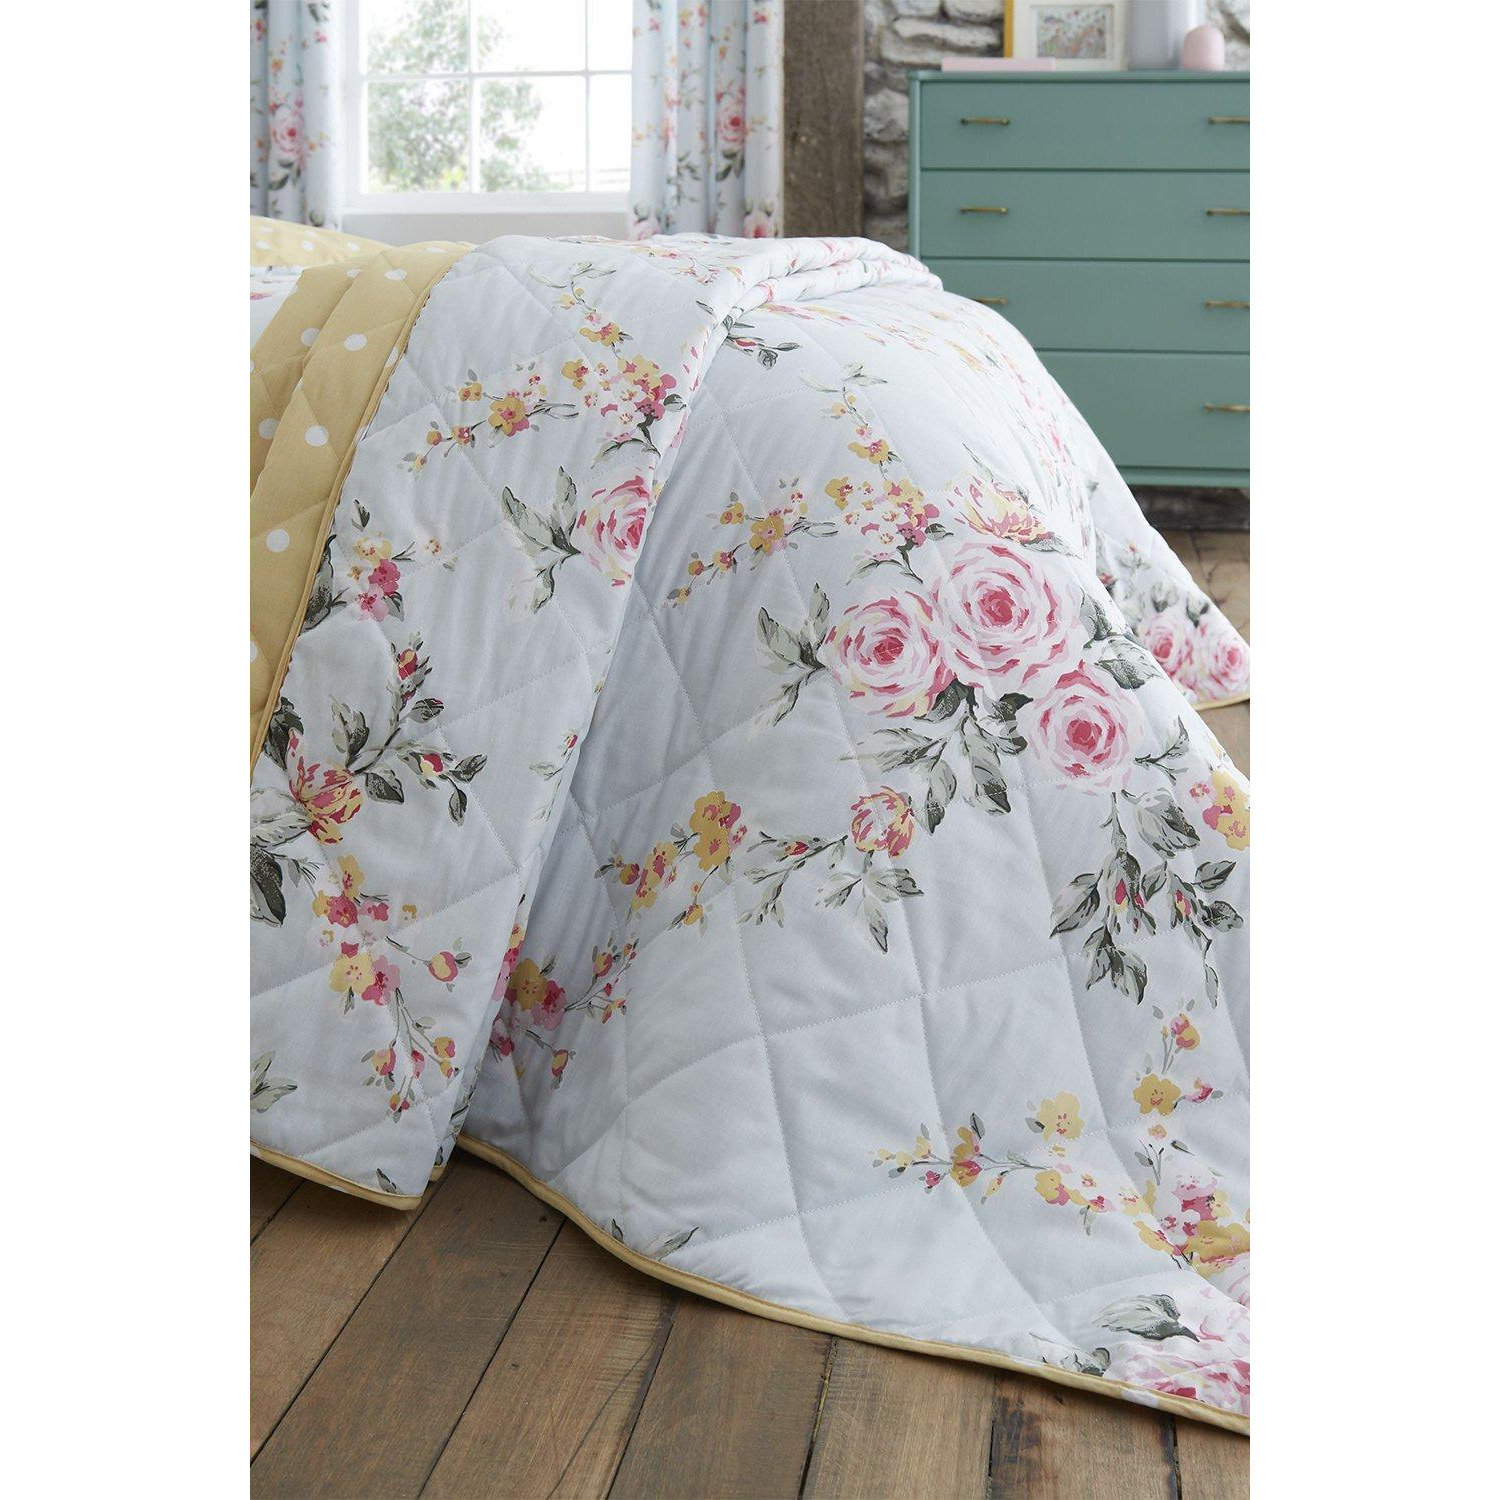 'Canterbury Floral' Bedspread - image 1